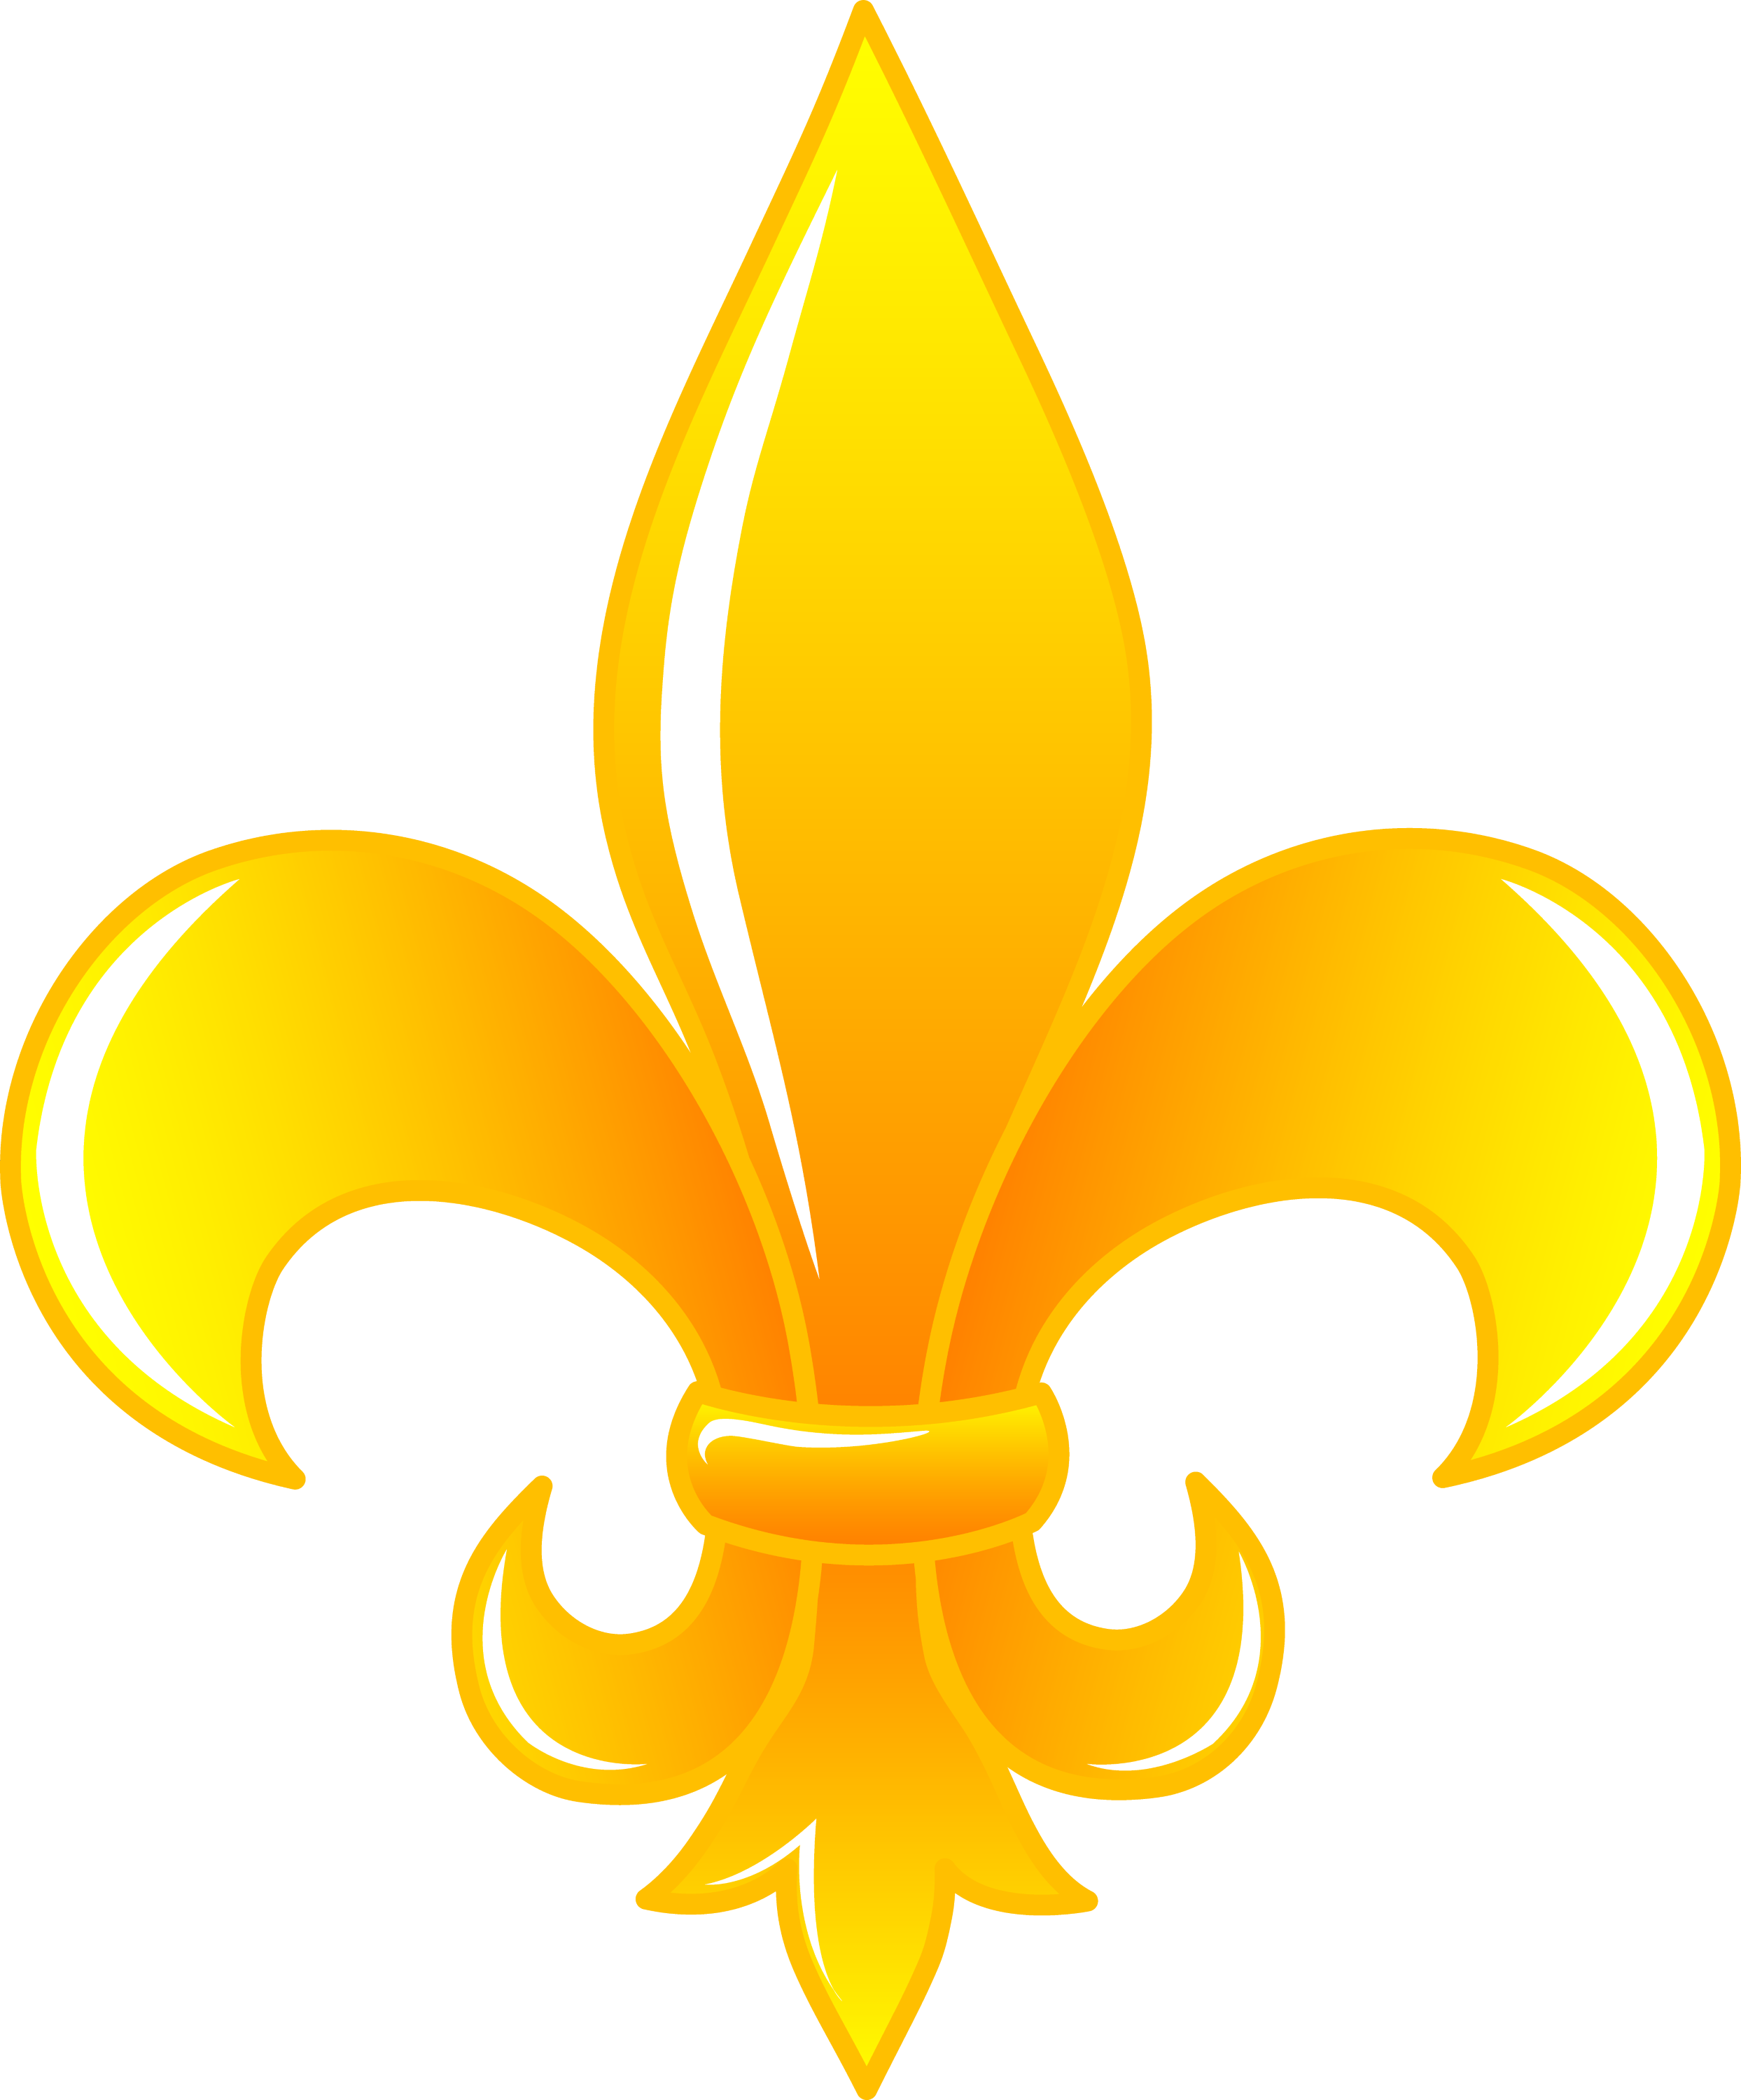 Shiny Golden Fleur De Lis - Free Clip Art